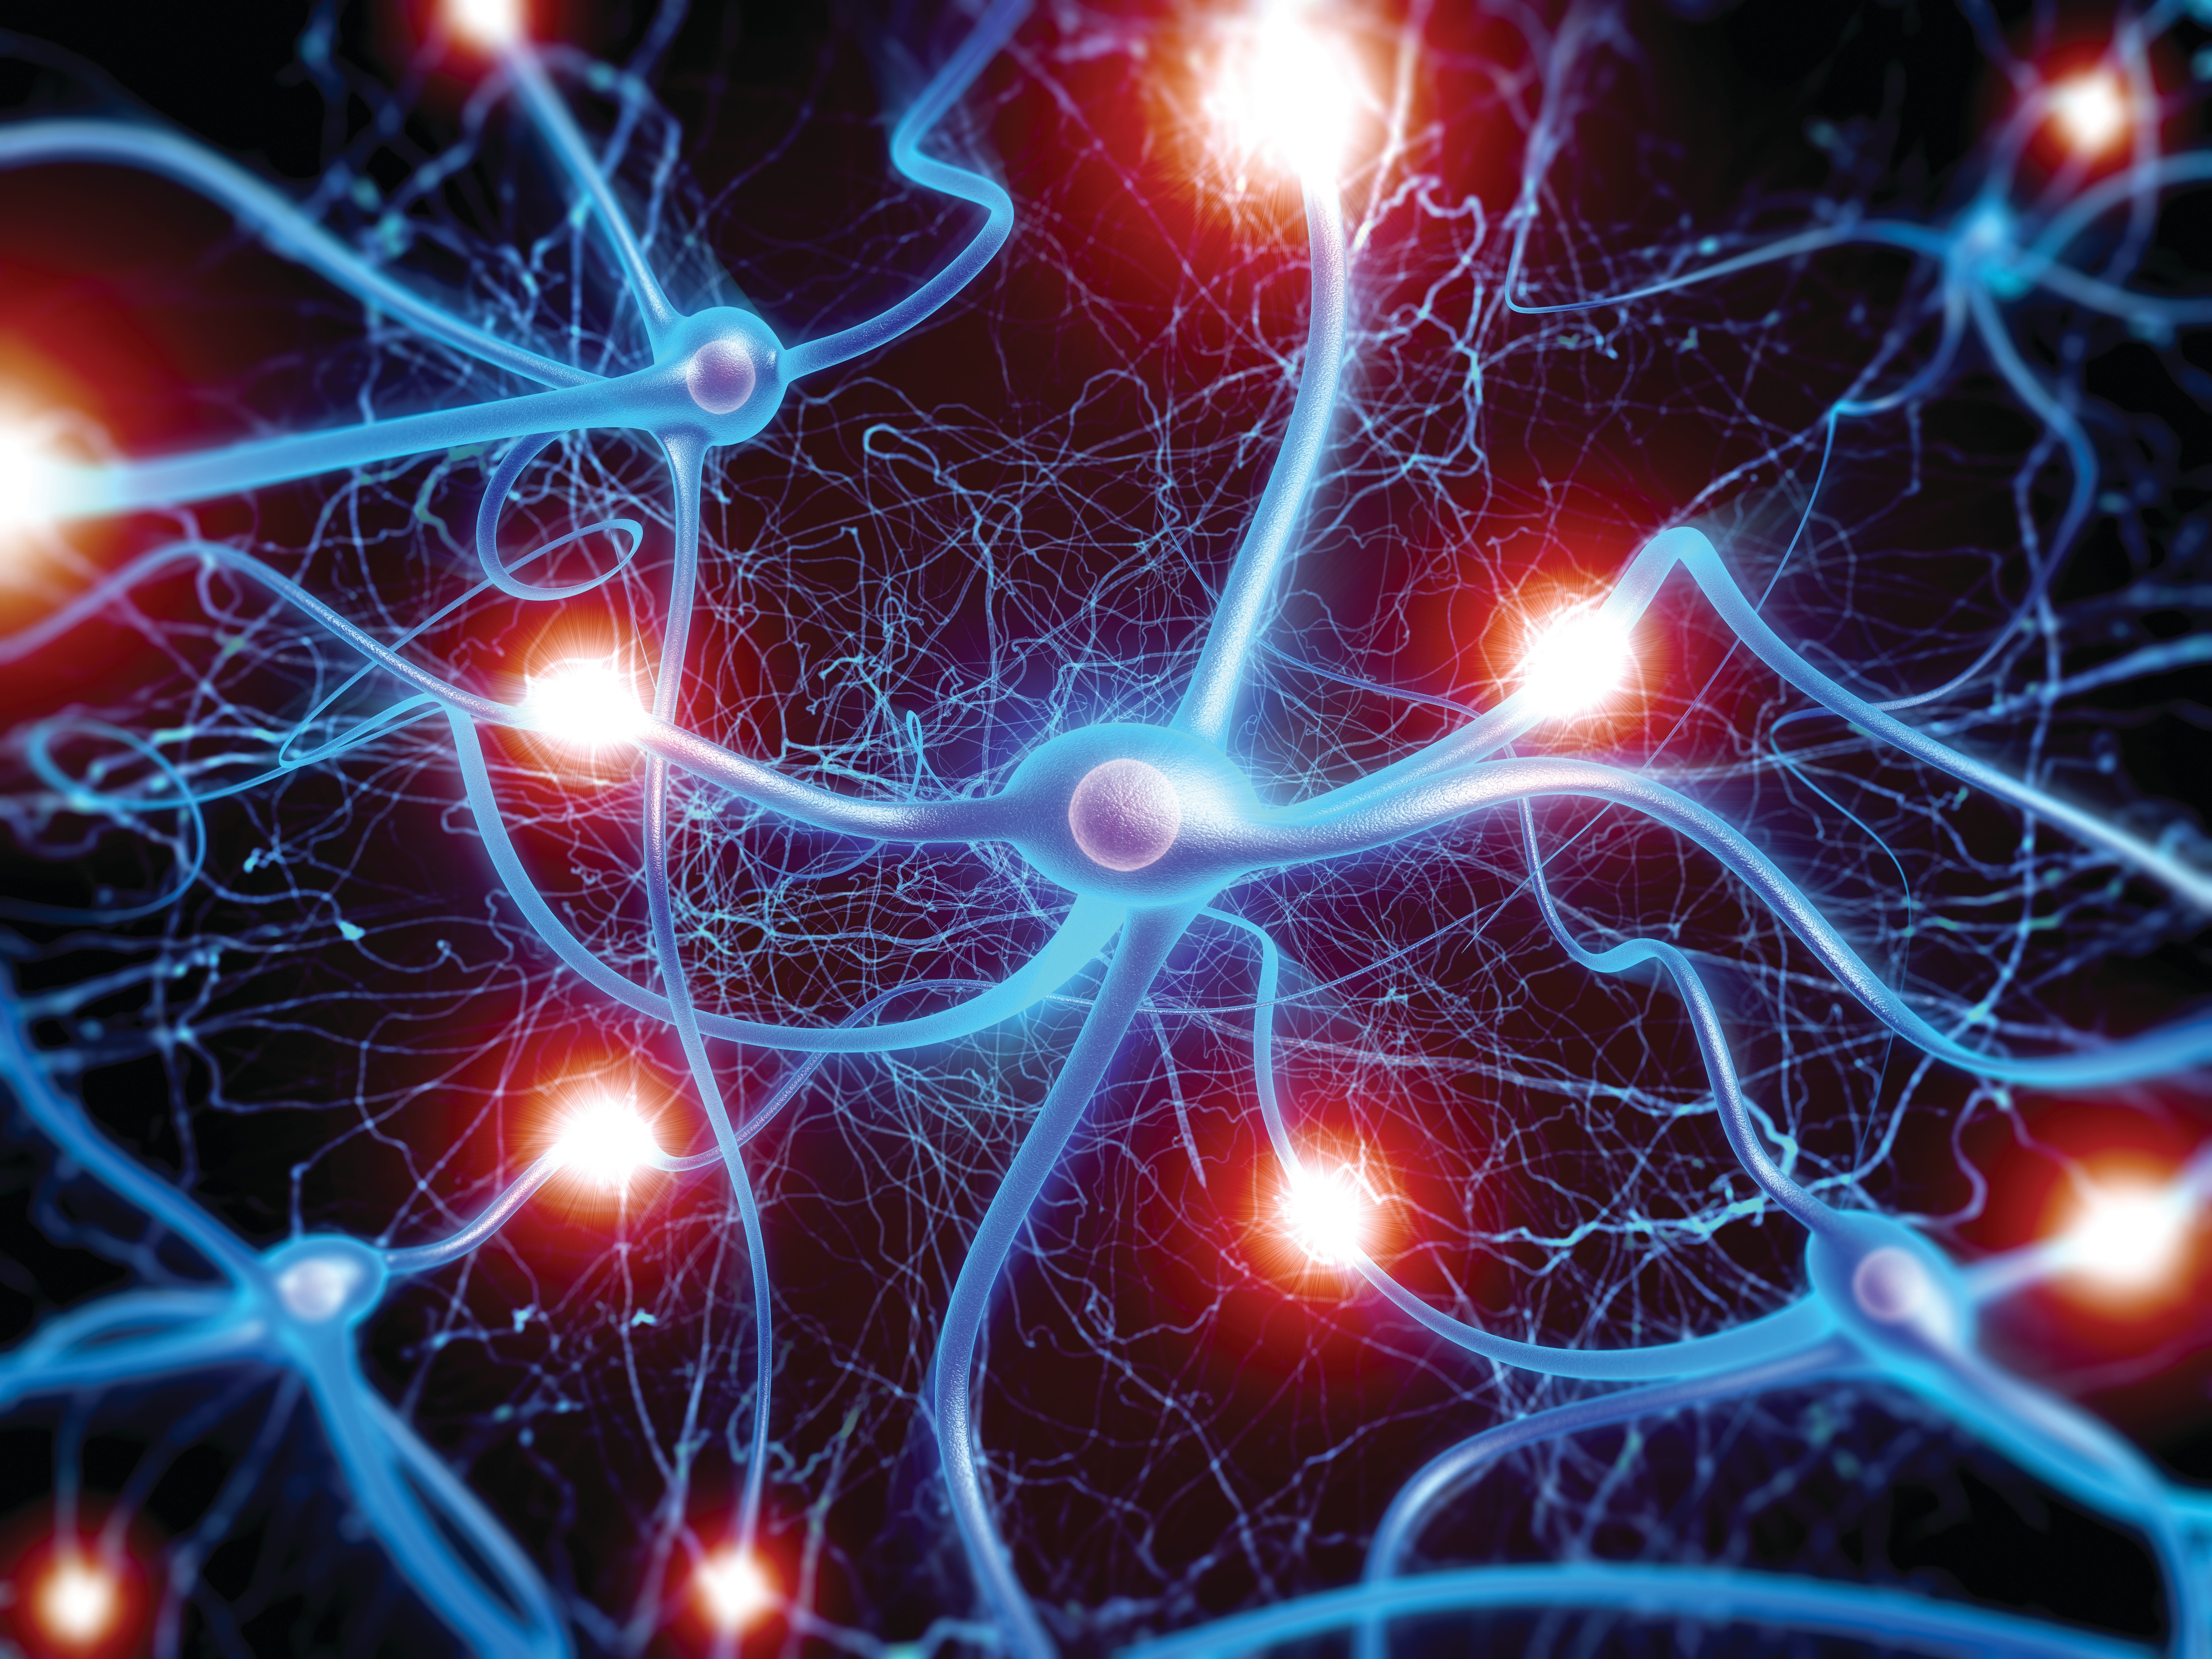 Brain neurons. Синапс нейрона. Нервная система человека Нейрон. Мозг человека Нейроны. Нейронные сети головного мозга.